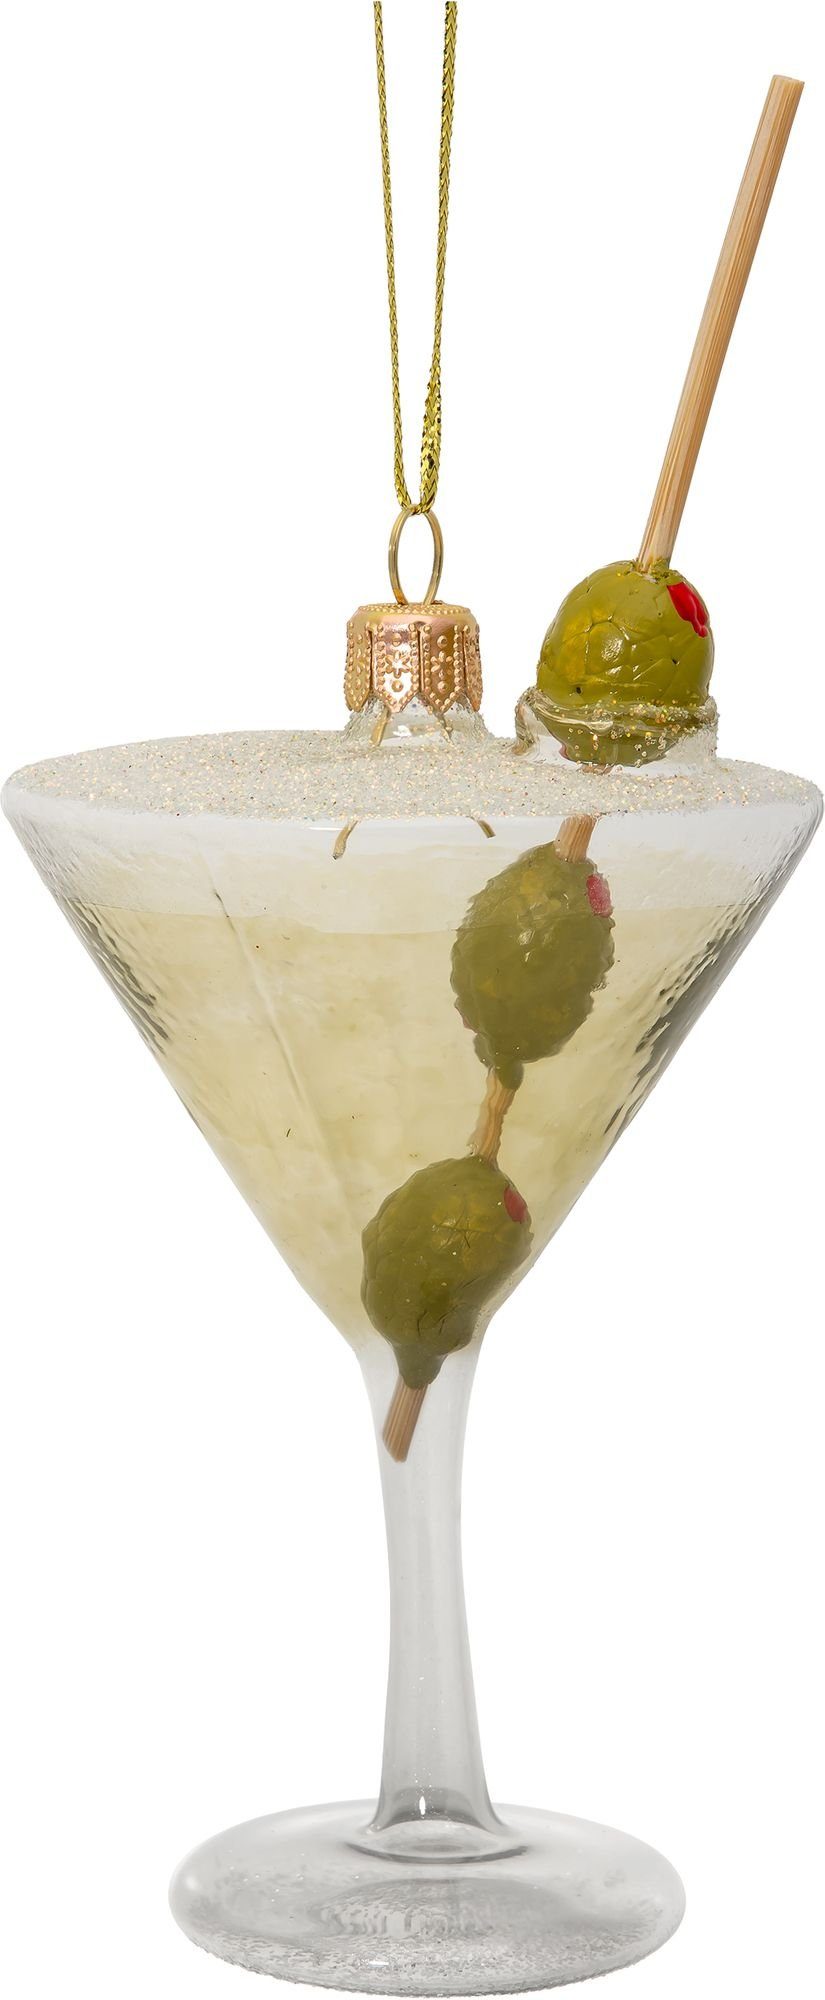 Line Glas Figur Christbaumschmuck BS752 SIKORA mit Premium Anhänger - Cocktail Oliven Weihnachtsbaum